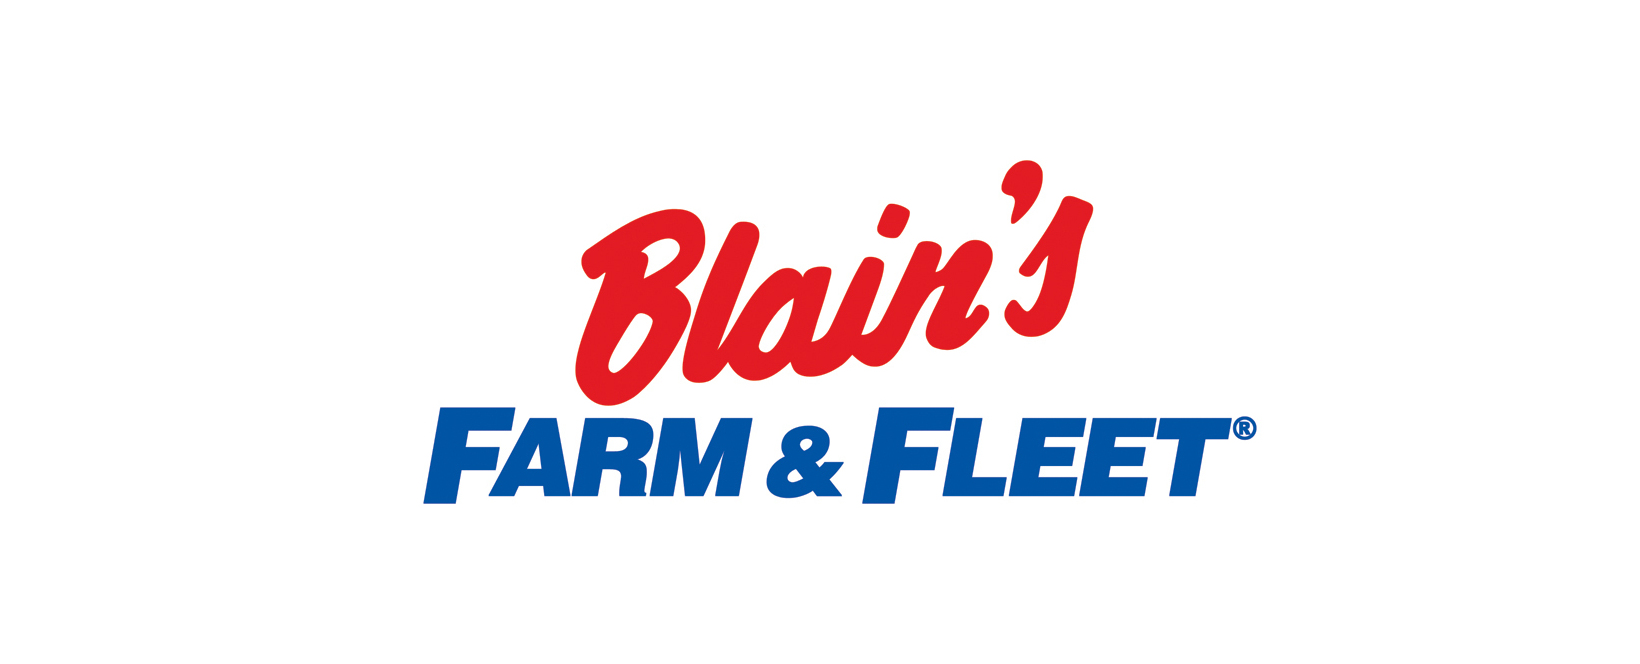 Blain's Farm & Fleet Discount Code 2022